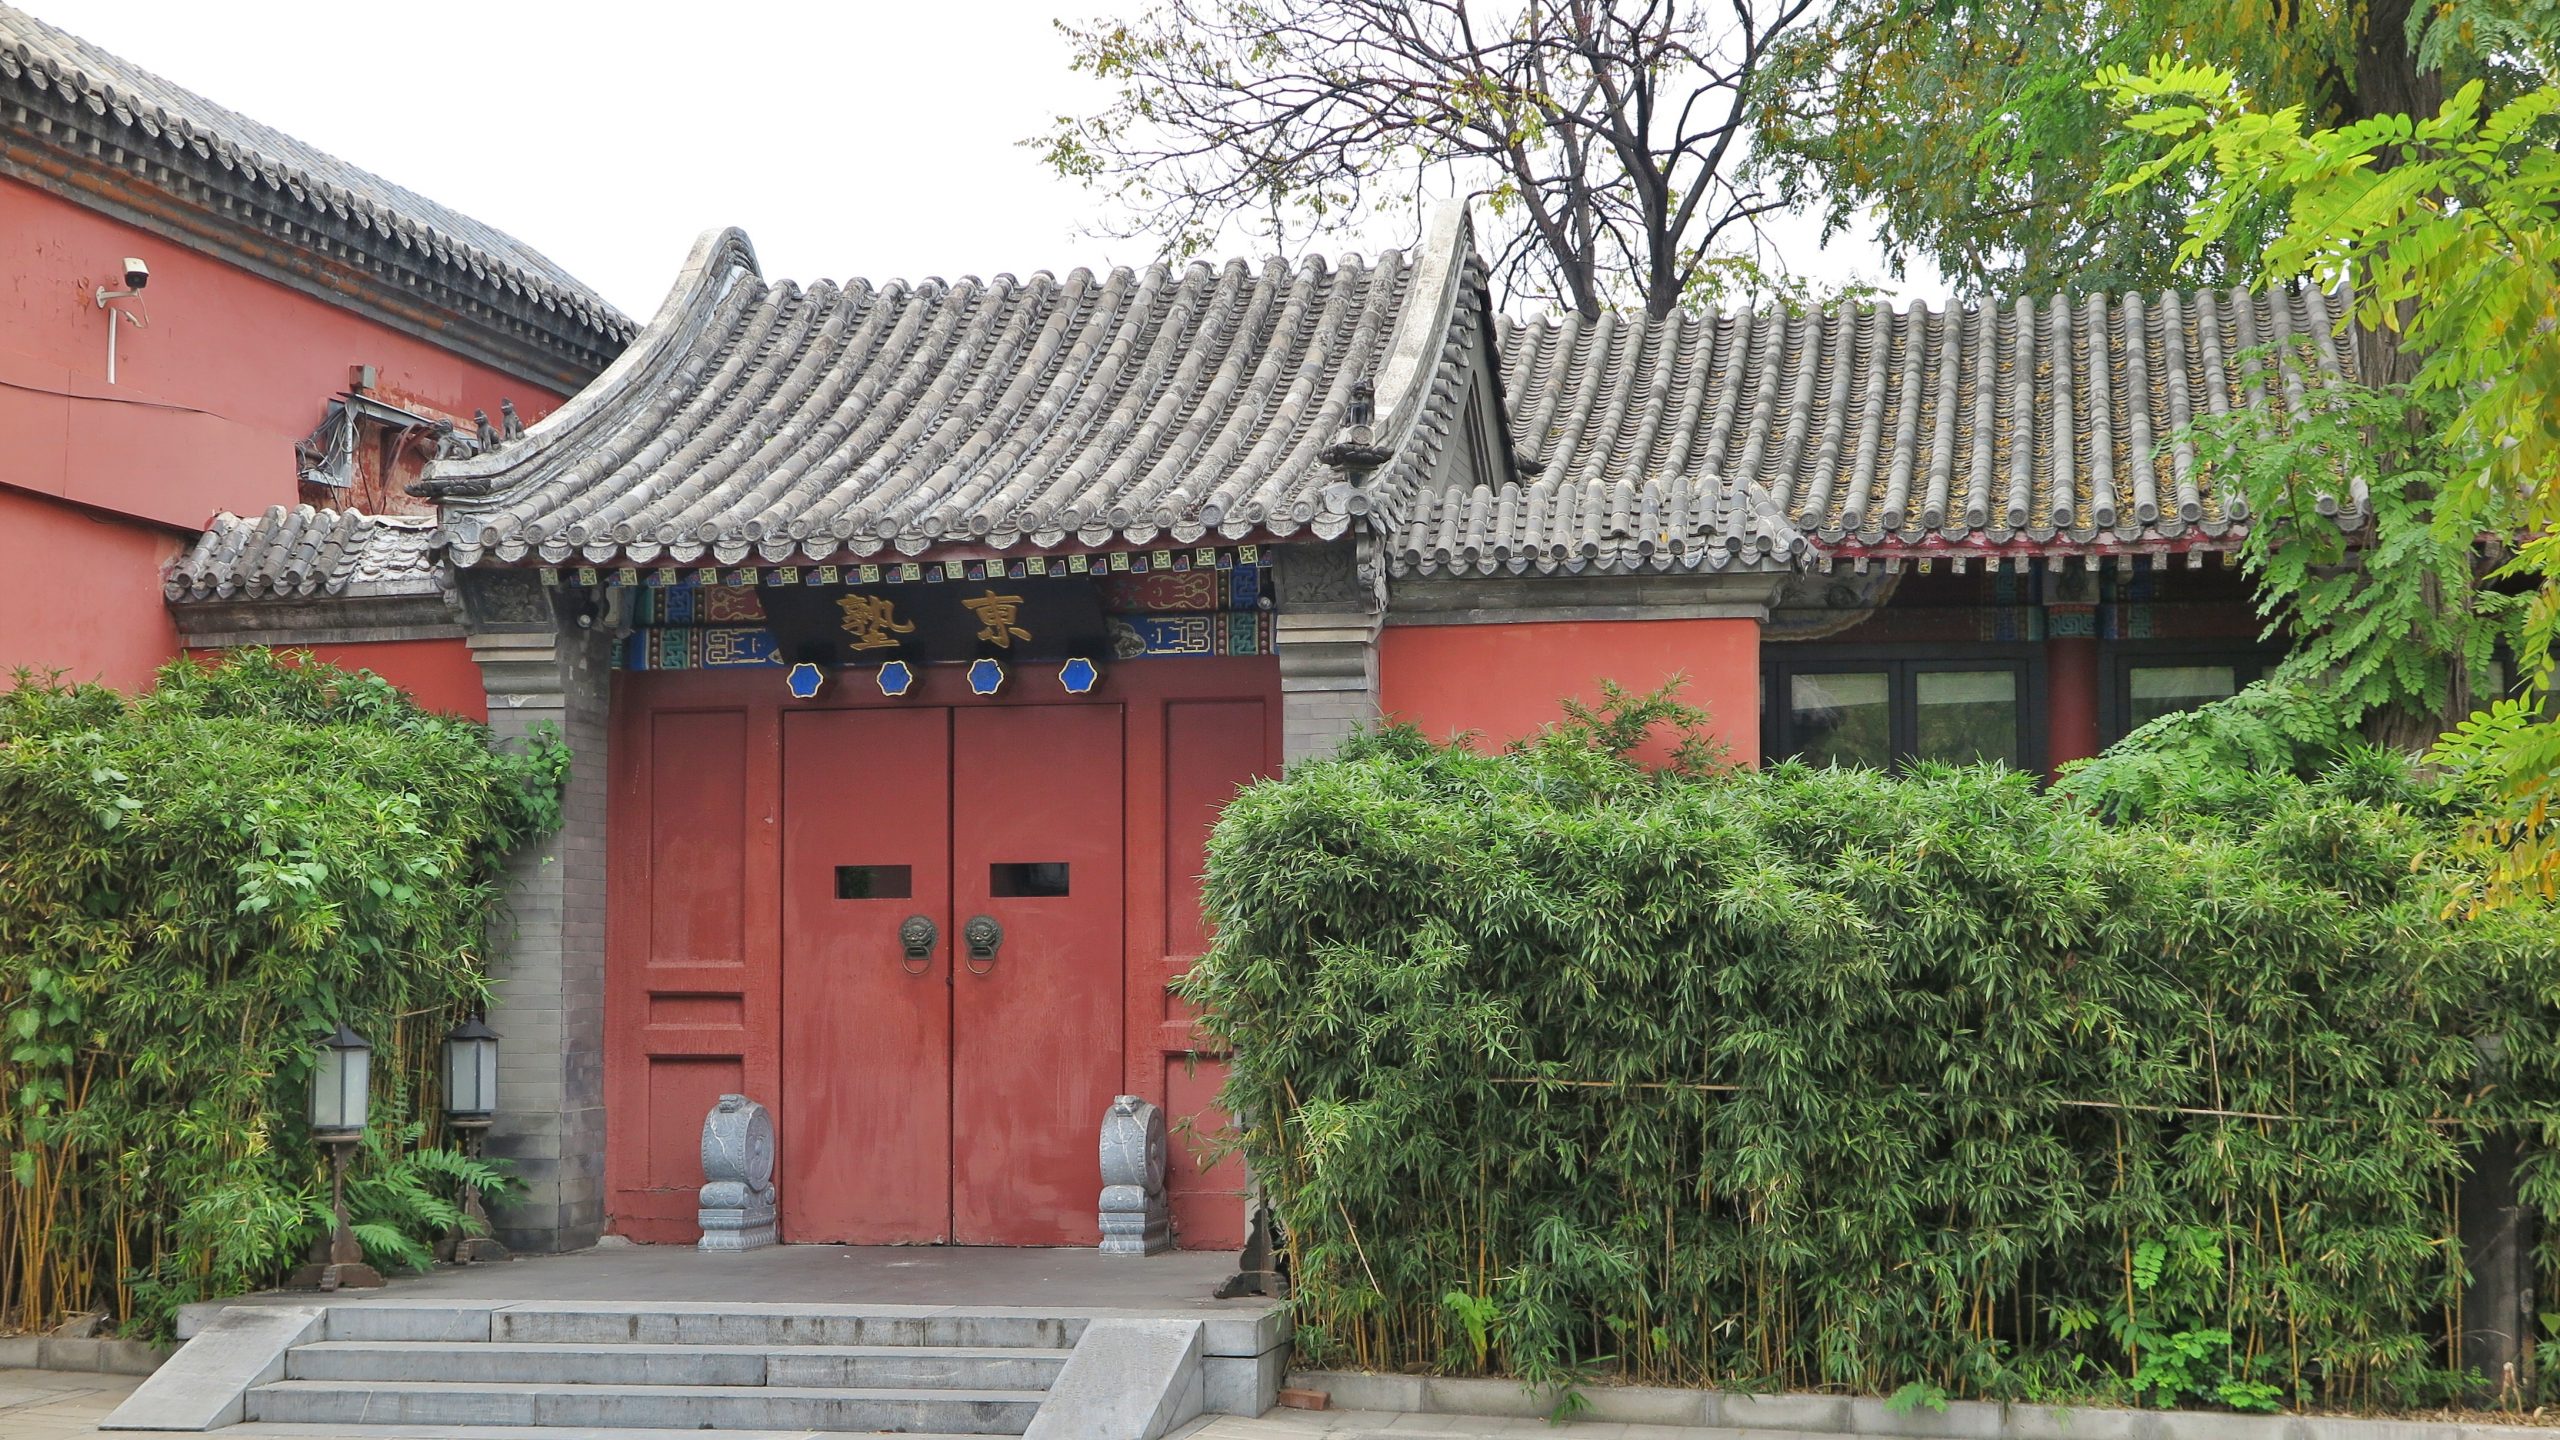 北京石刻艺术博物馆/五塔寺大门入口厢房